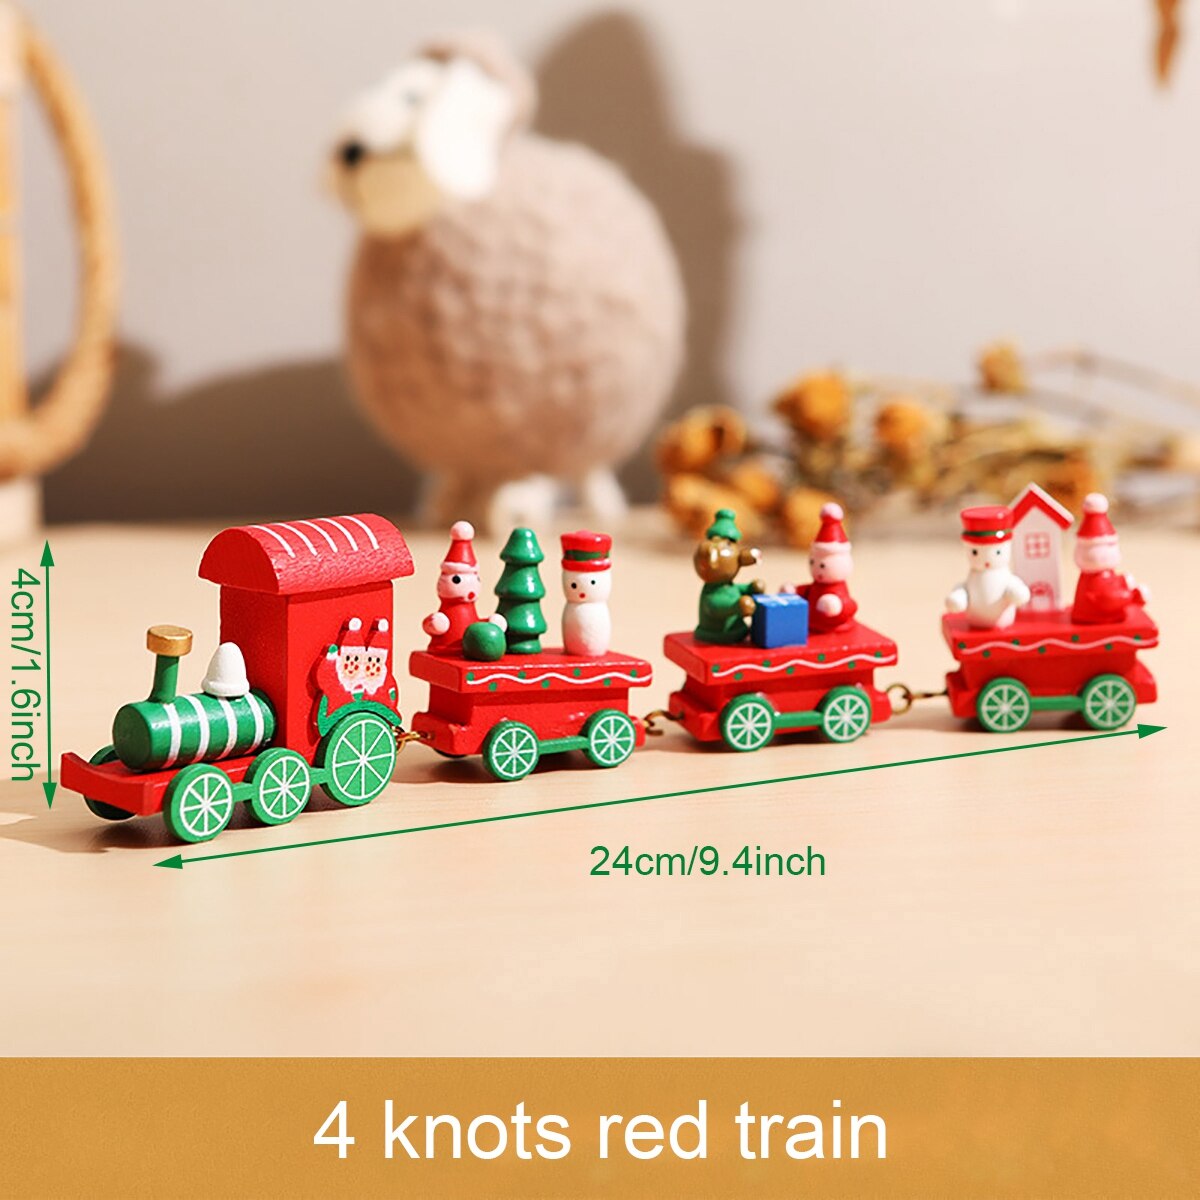 Wooden train9